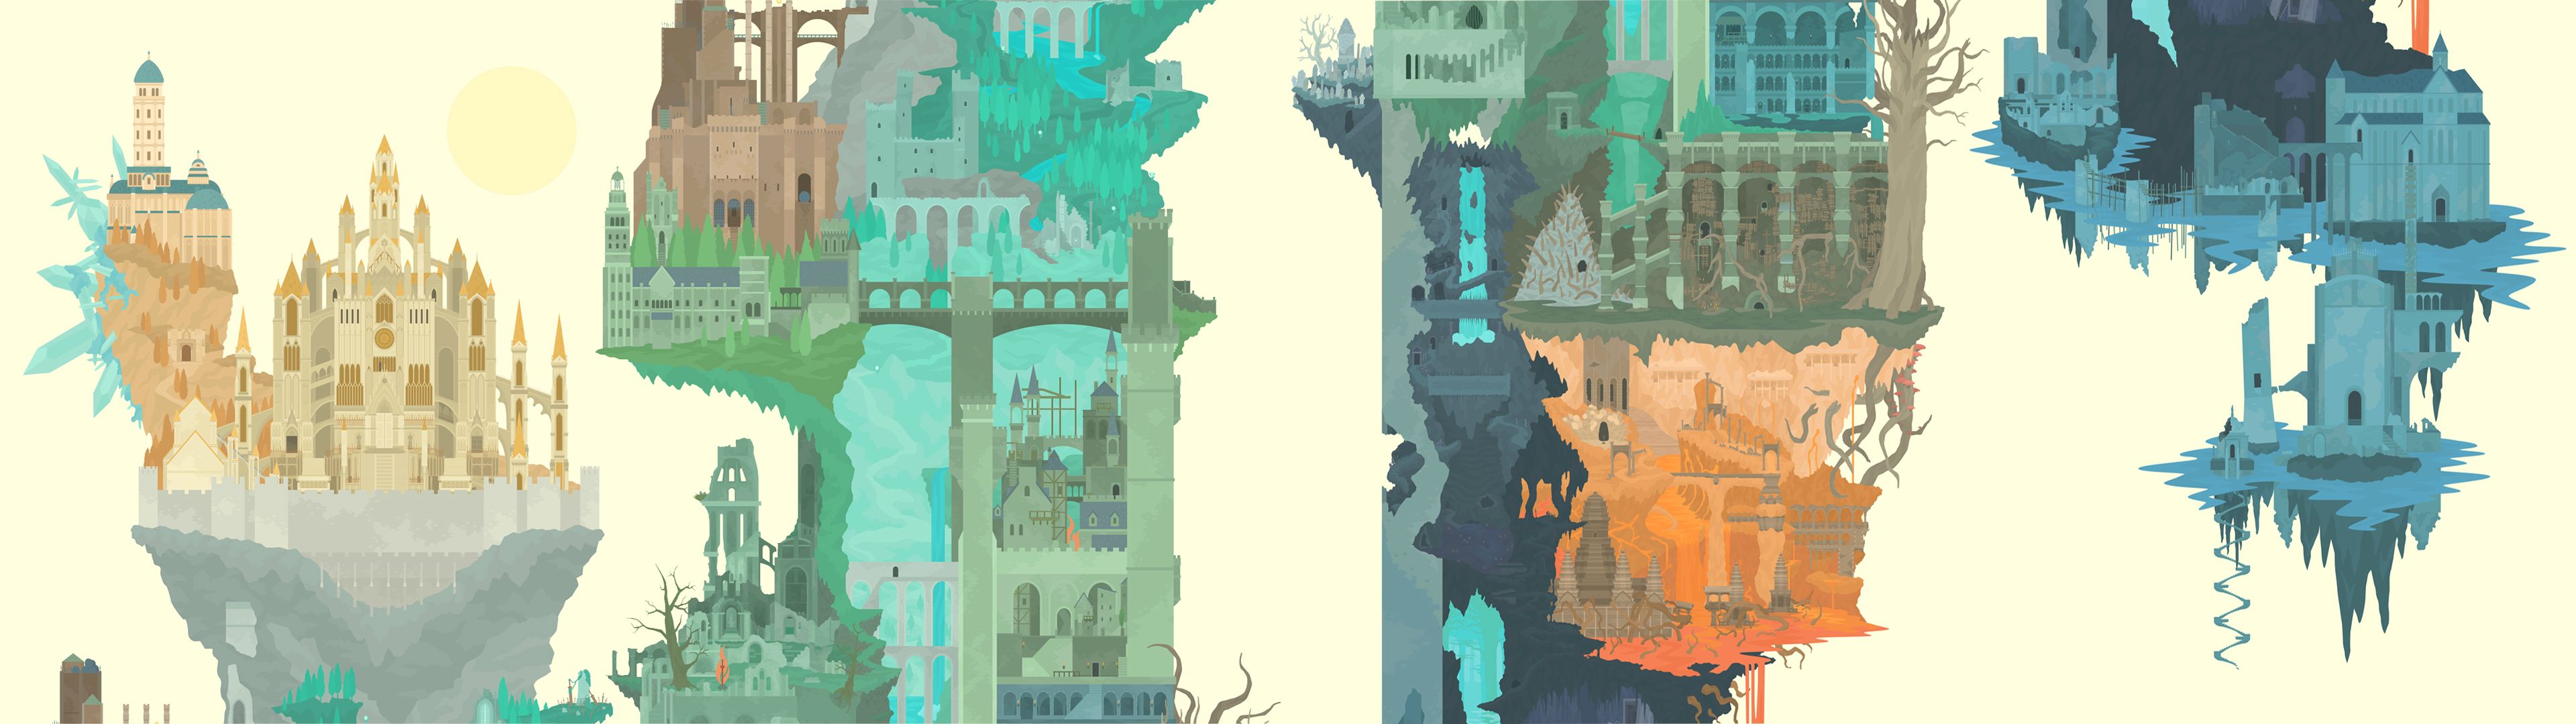 Dark Souls Dual Screen Wallpapers